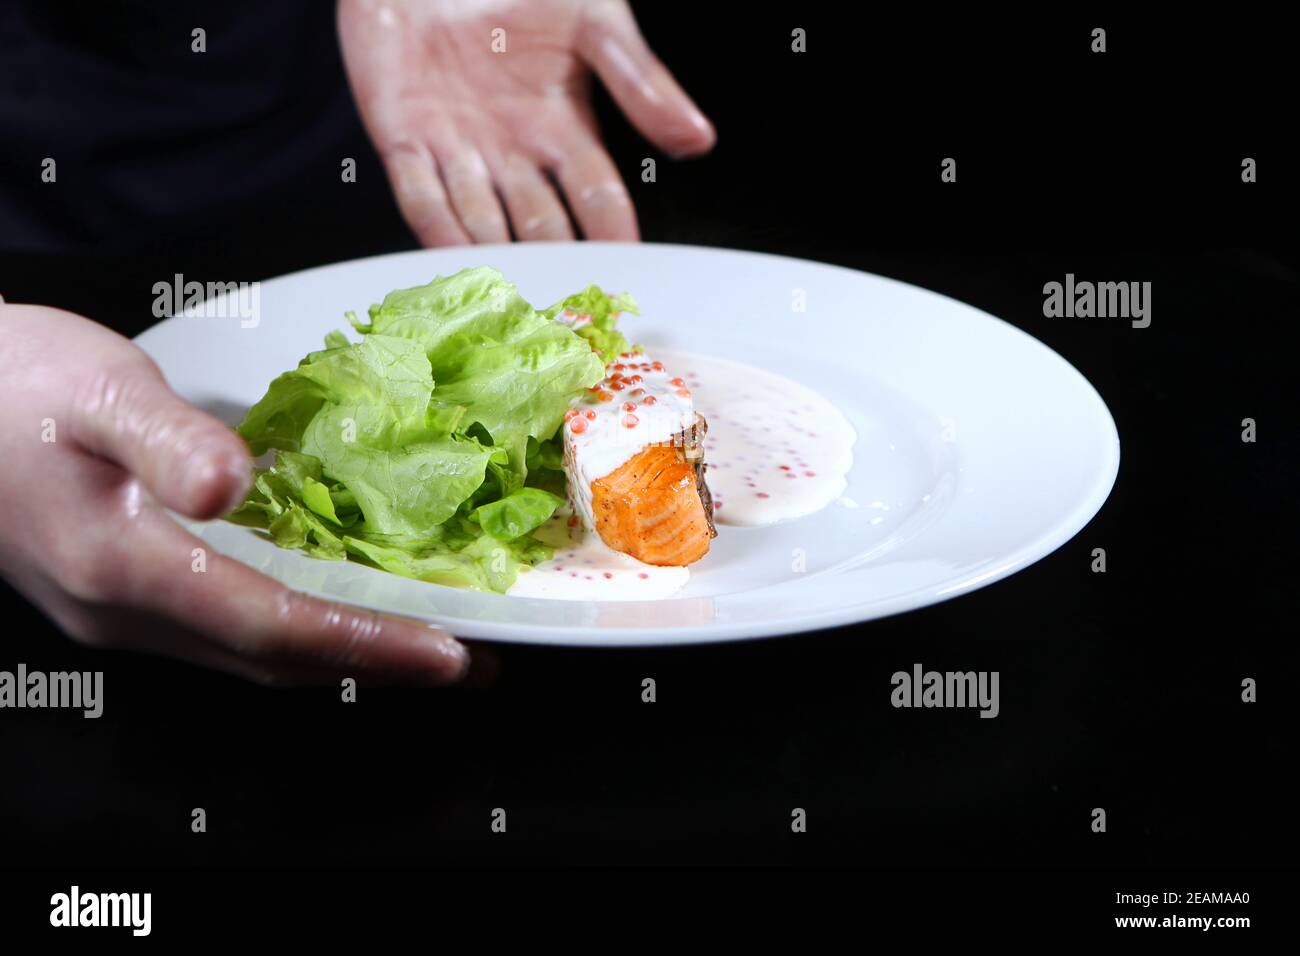 Lachs in cremiger Kaviarsauce auf einem weißen Teller. Der Koch serviert das zubereitete Gericht. Salatblätter. Foto auf schwarzem Hintergrund. Nicht erkennbare Person. Stockfoto